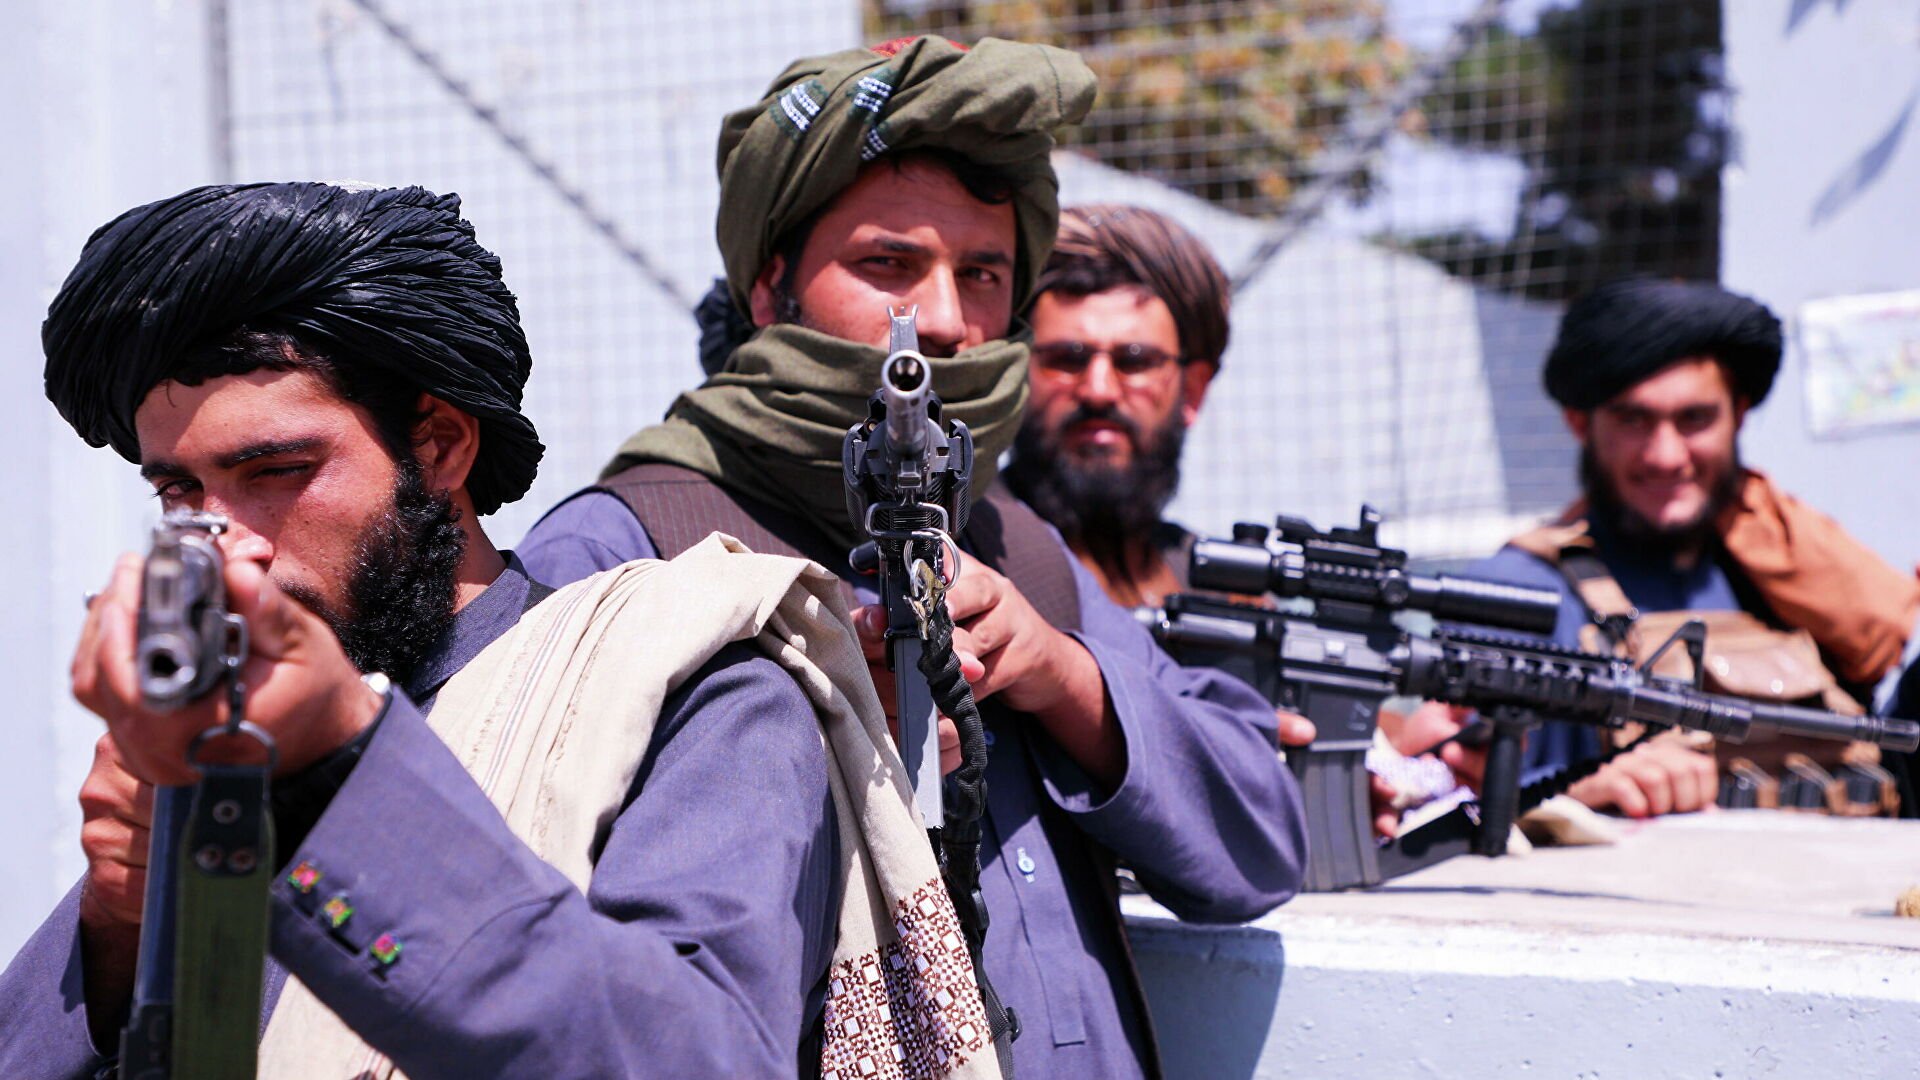 АҚШ «Талибанды» айыптады